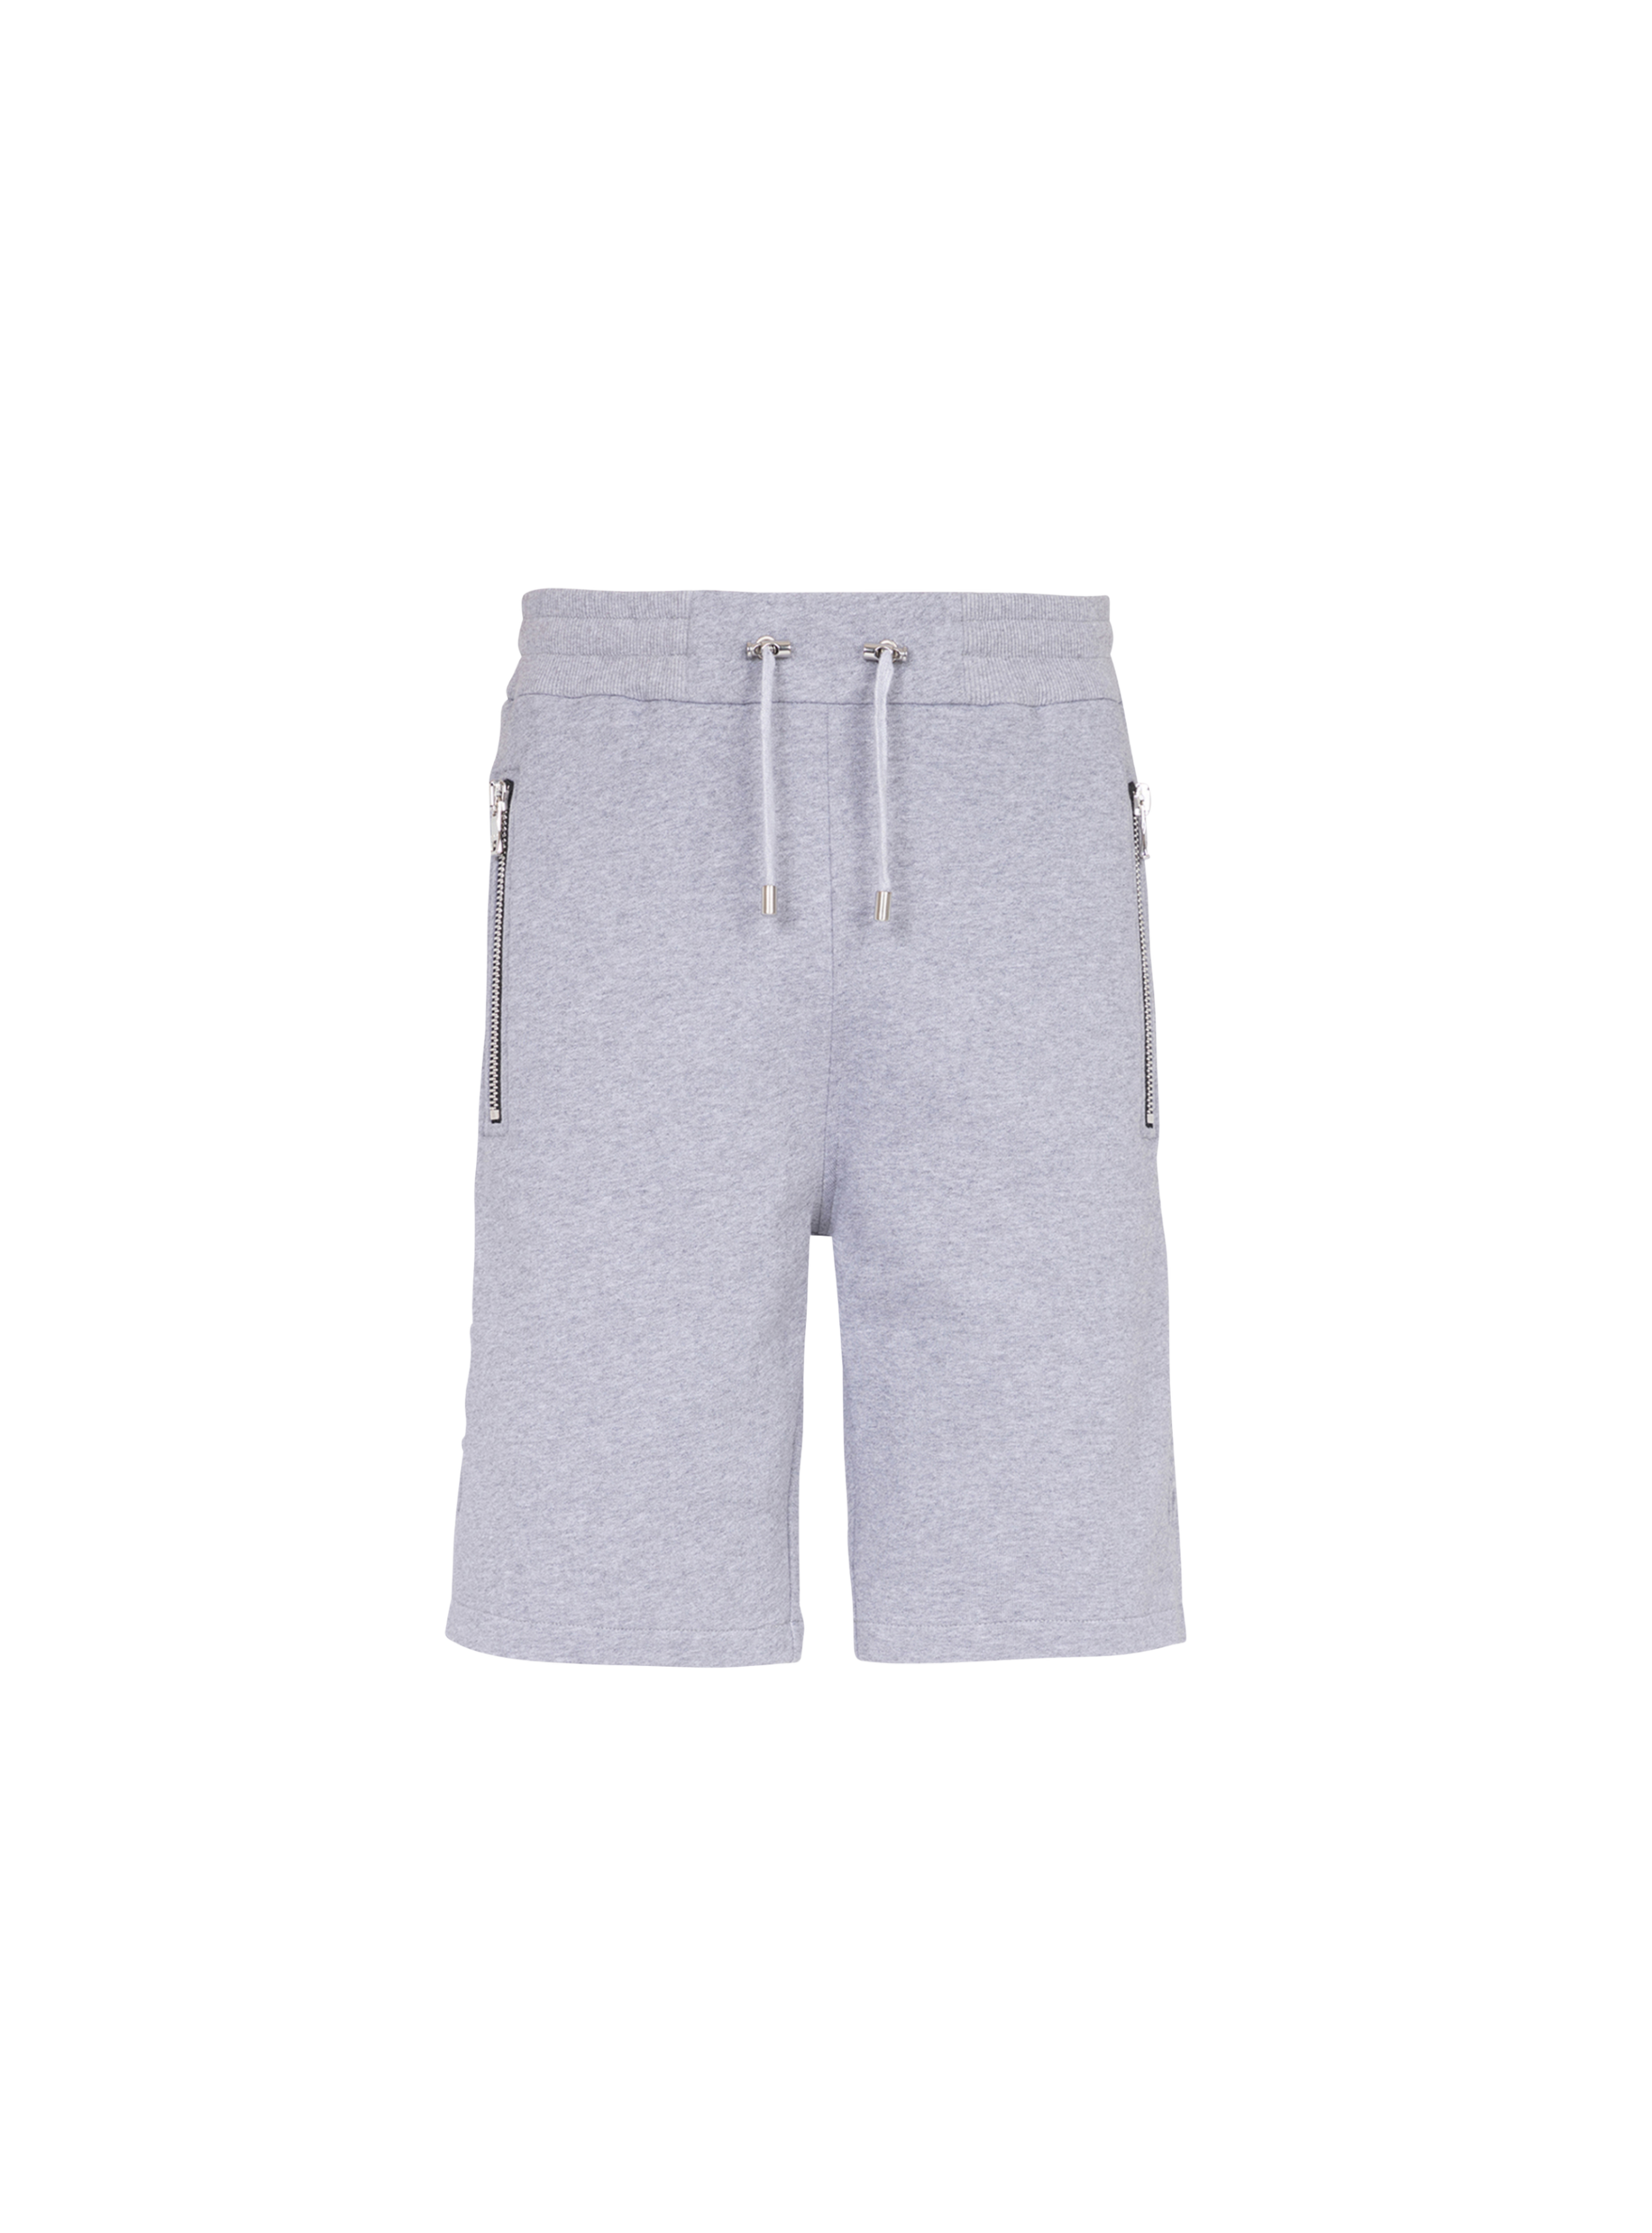 Pantalones cortos de algodón con logotipo de Balmain Paris negro en relieve, gris